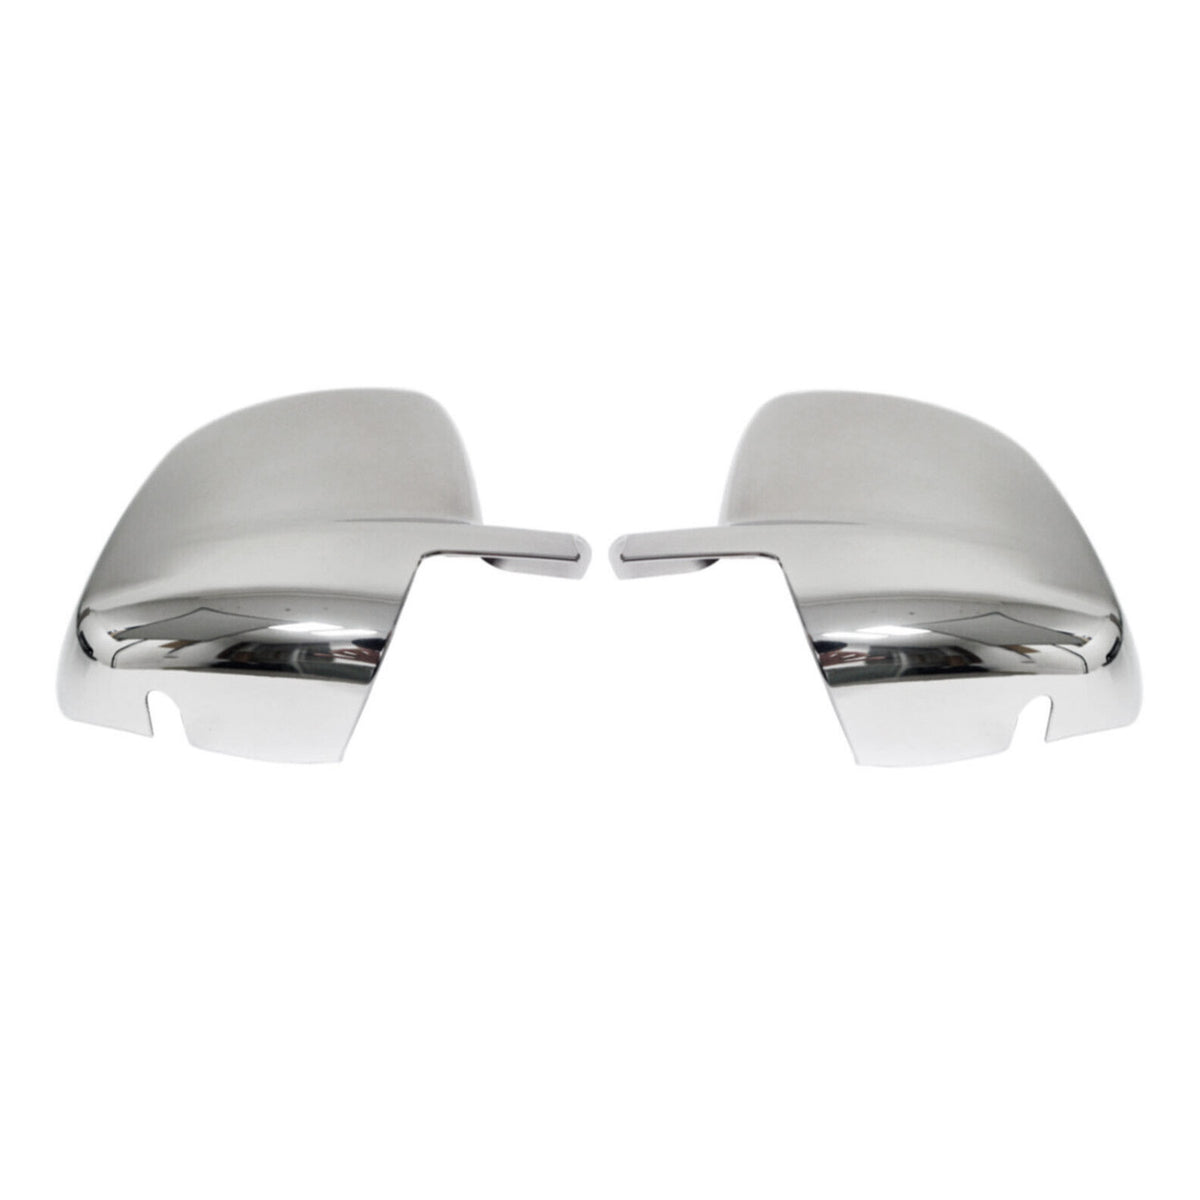 Spiegelkappen Spiegelabdeckung für Peugeot Bipper 2008-2014 Edelstahl Silber